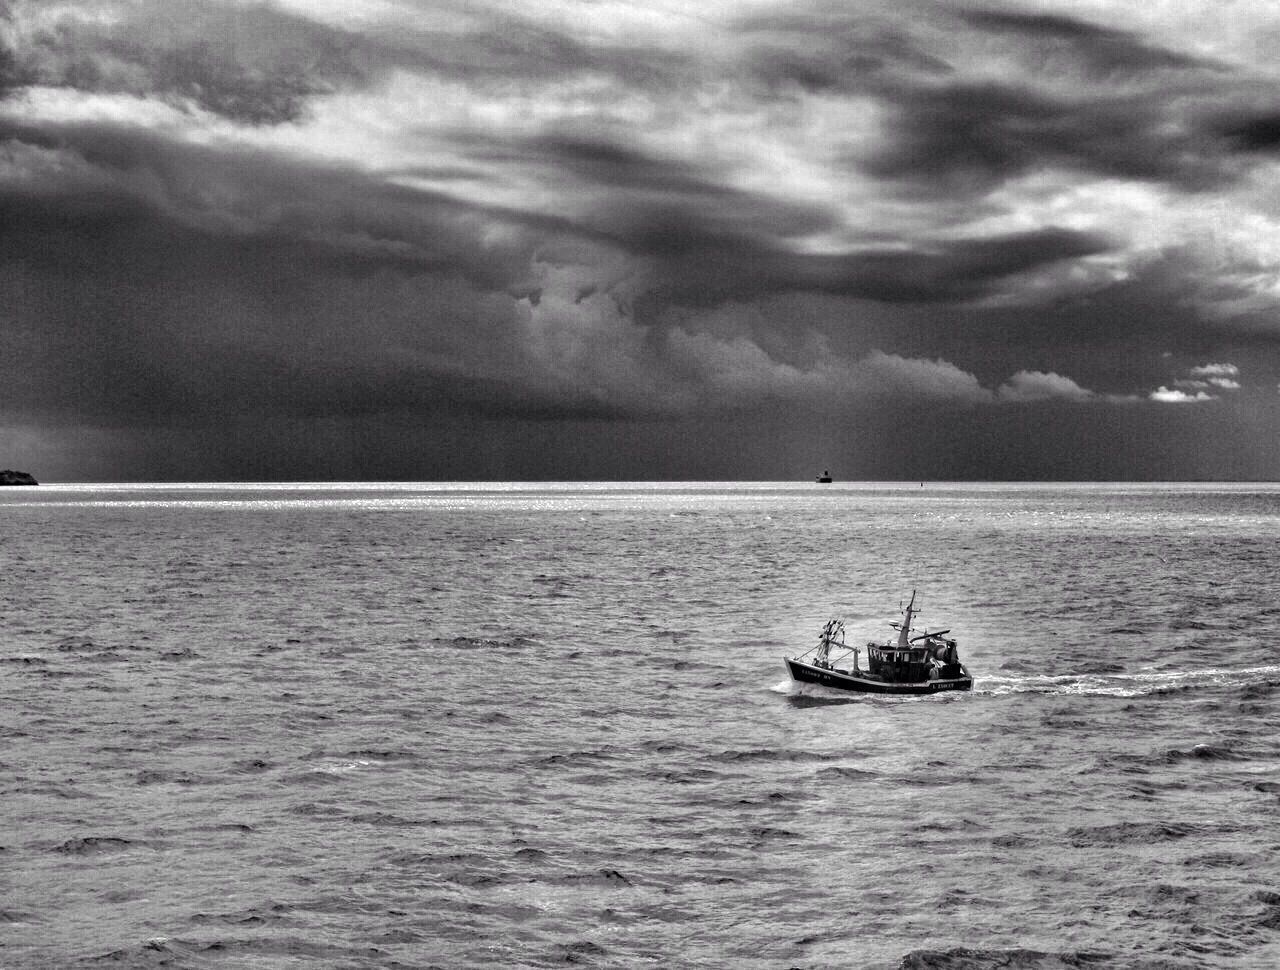 Lone boat in calm sea against clouds